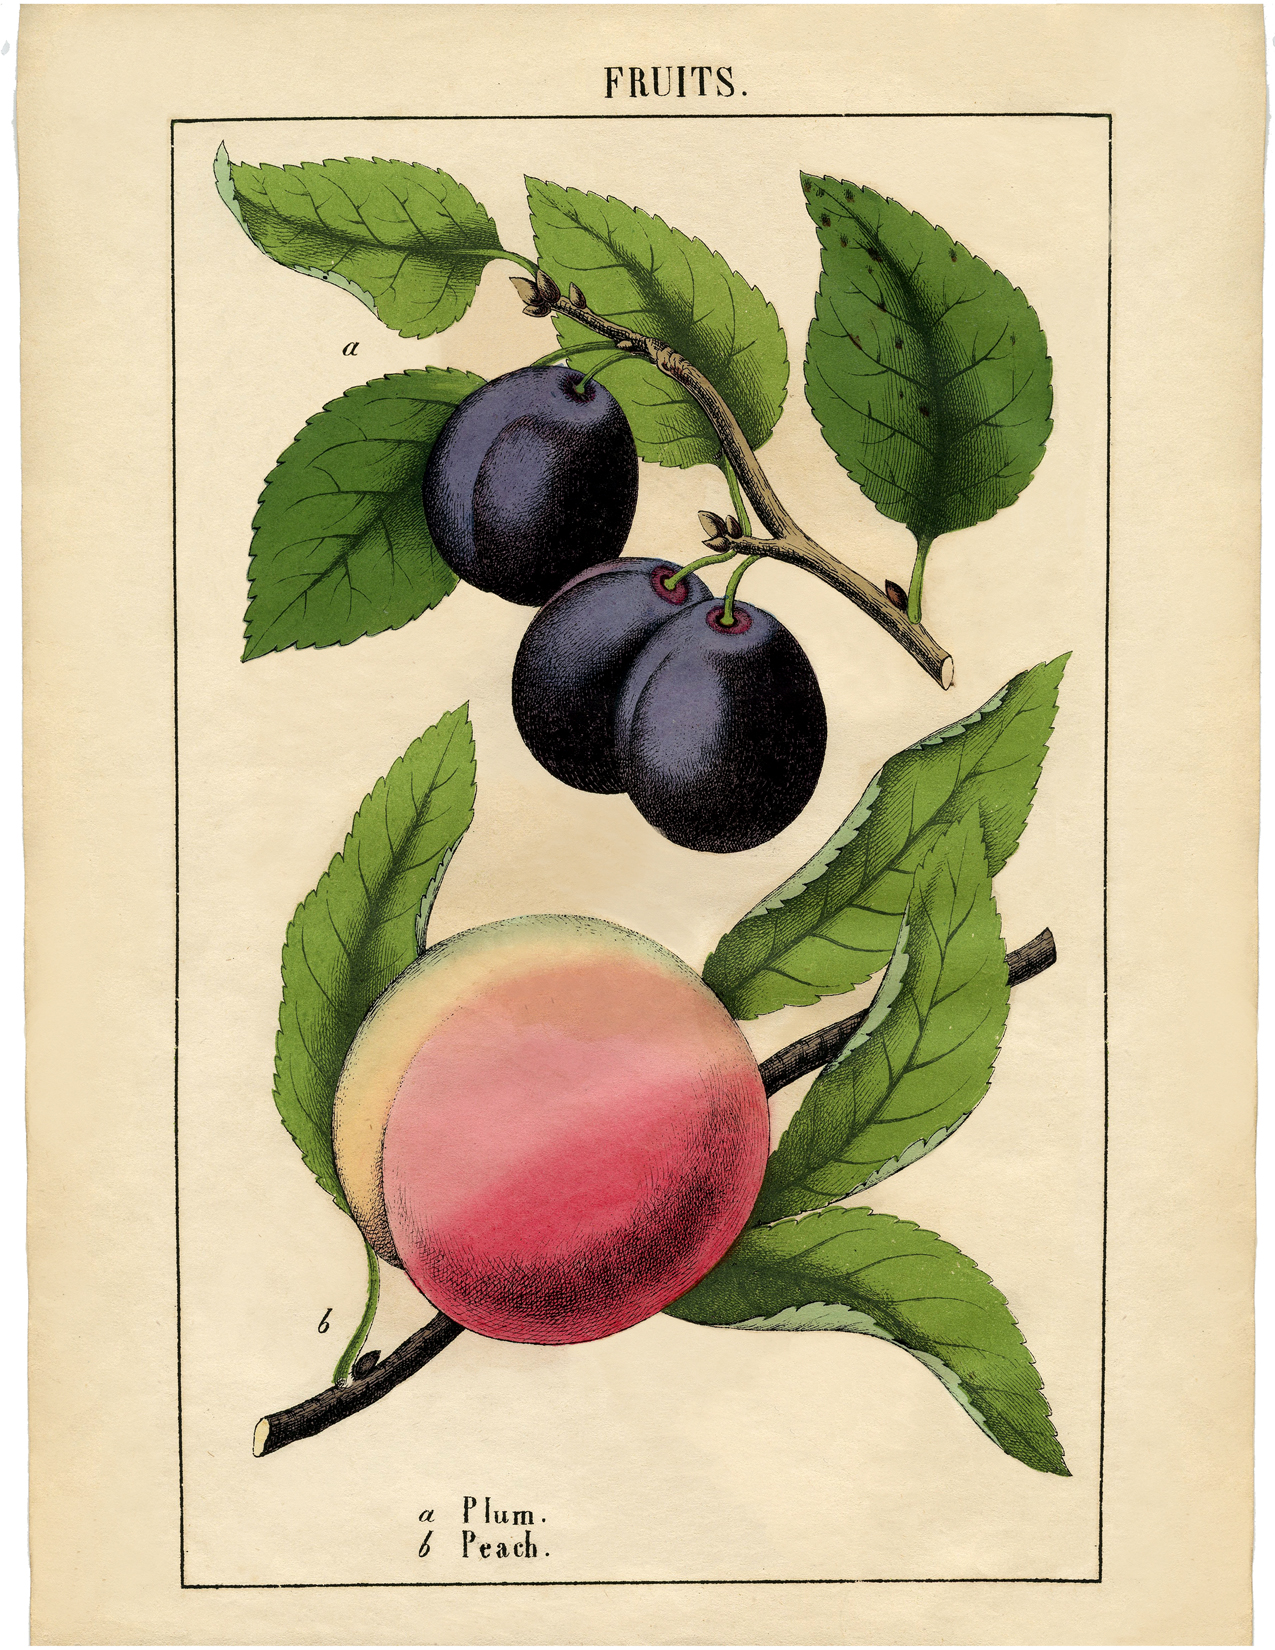 Vintage Plums Print Digital Download  Jpeg of Vintage Plums  Plant and Botanical Images  Vintage Fruit Prints